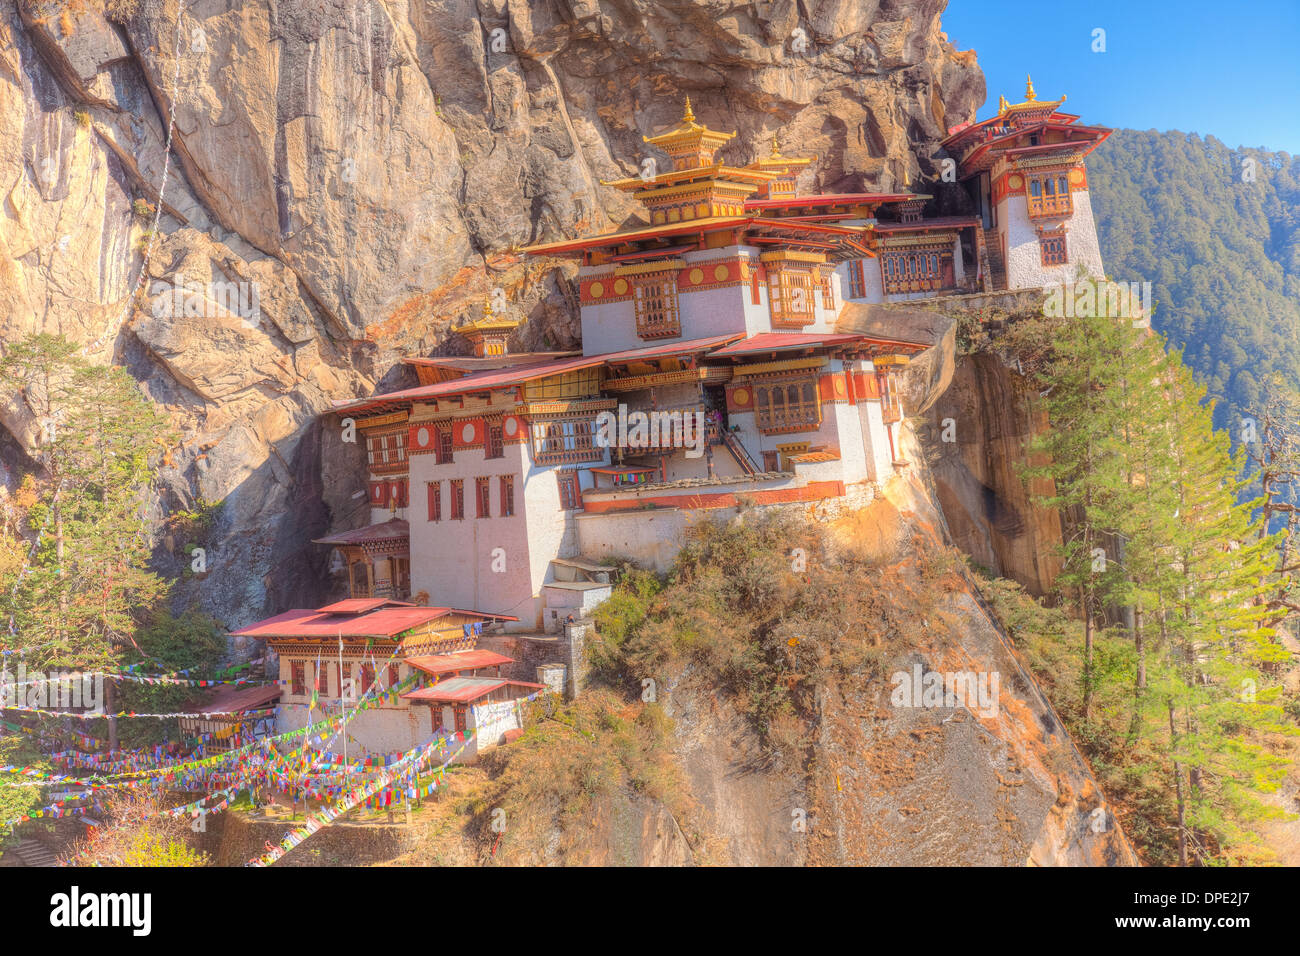 Les Tigres Nest monastère. Le Bhoutan, l'Himalaya, la vallée de Paro. Taktshang Goemba. Perché à 3 000 pieds au-dessus de la vallée. Banque D'Images